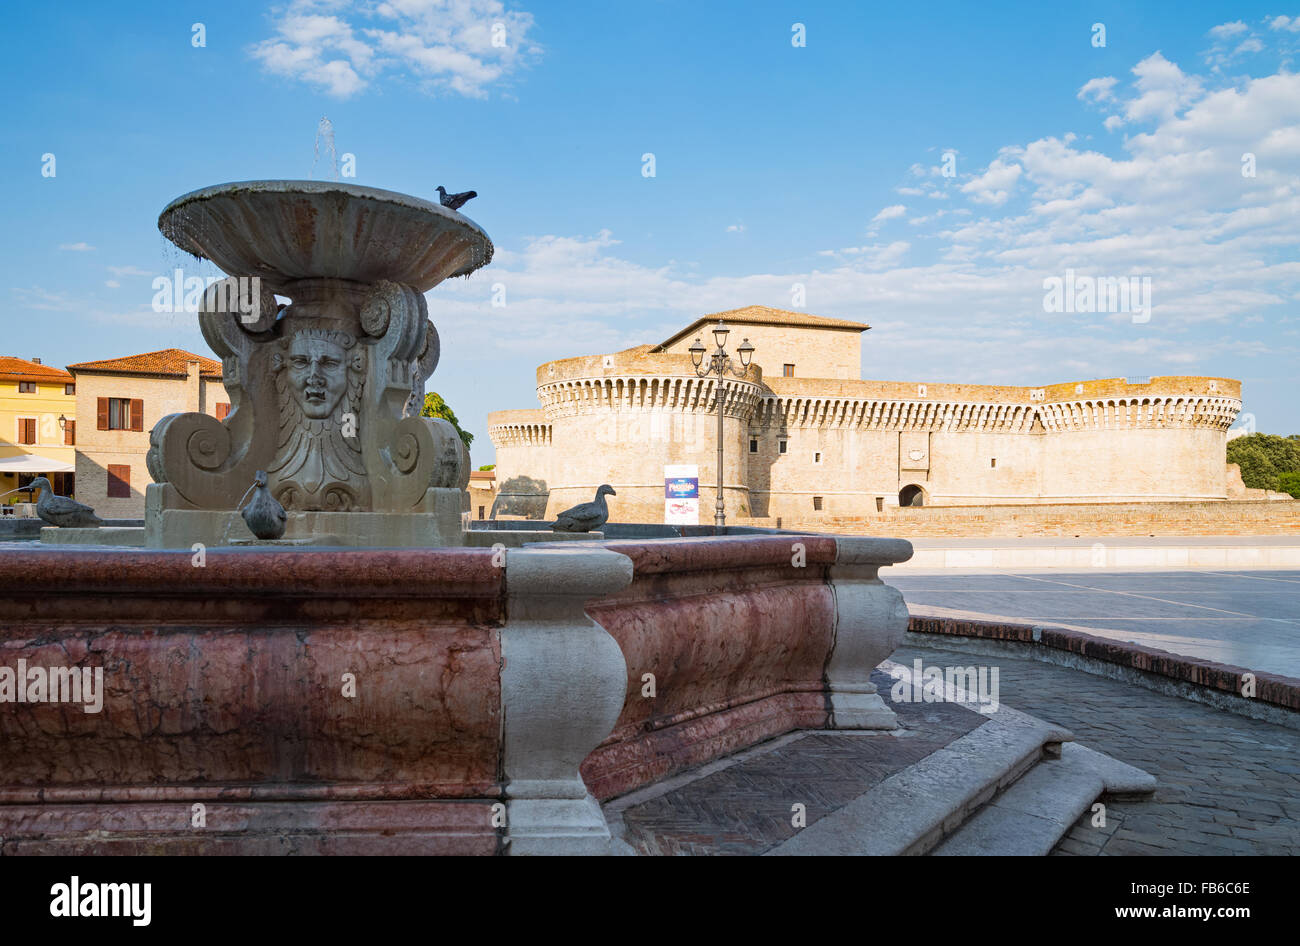 Italia, región de Marche, Senigallia, el fountaon de patos con la Rocca Roveresca en el fondo Foto de stock